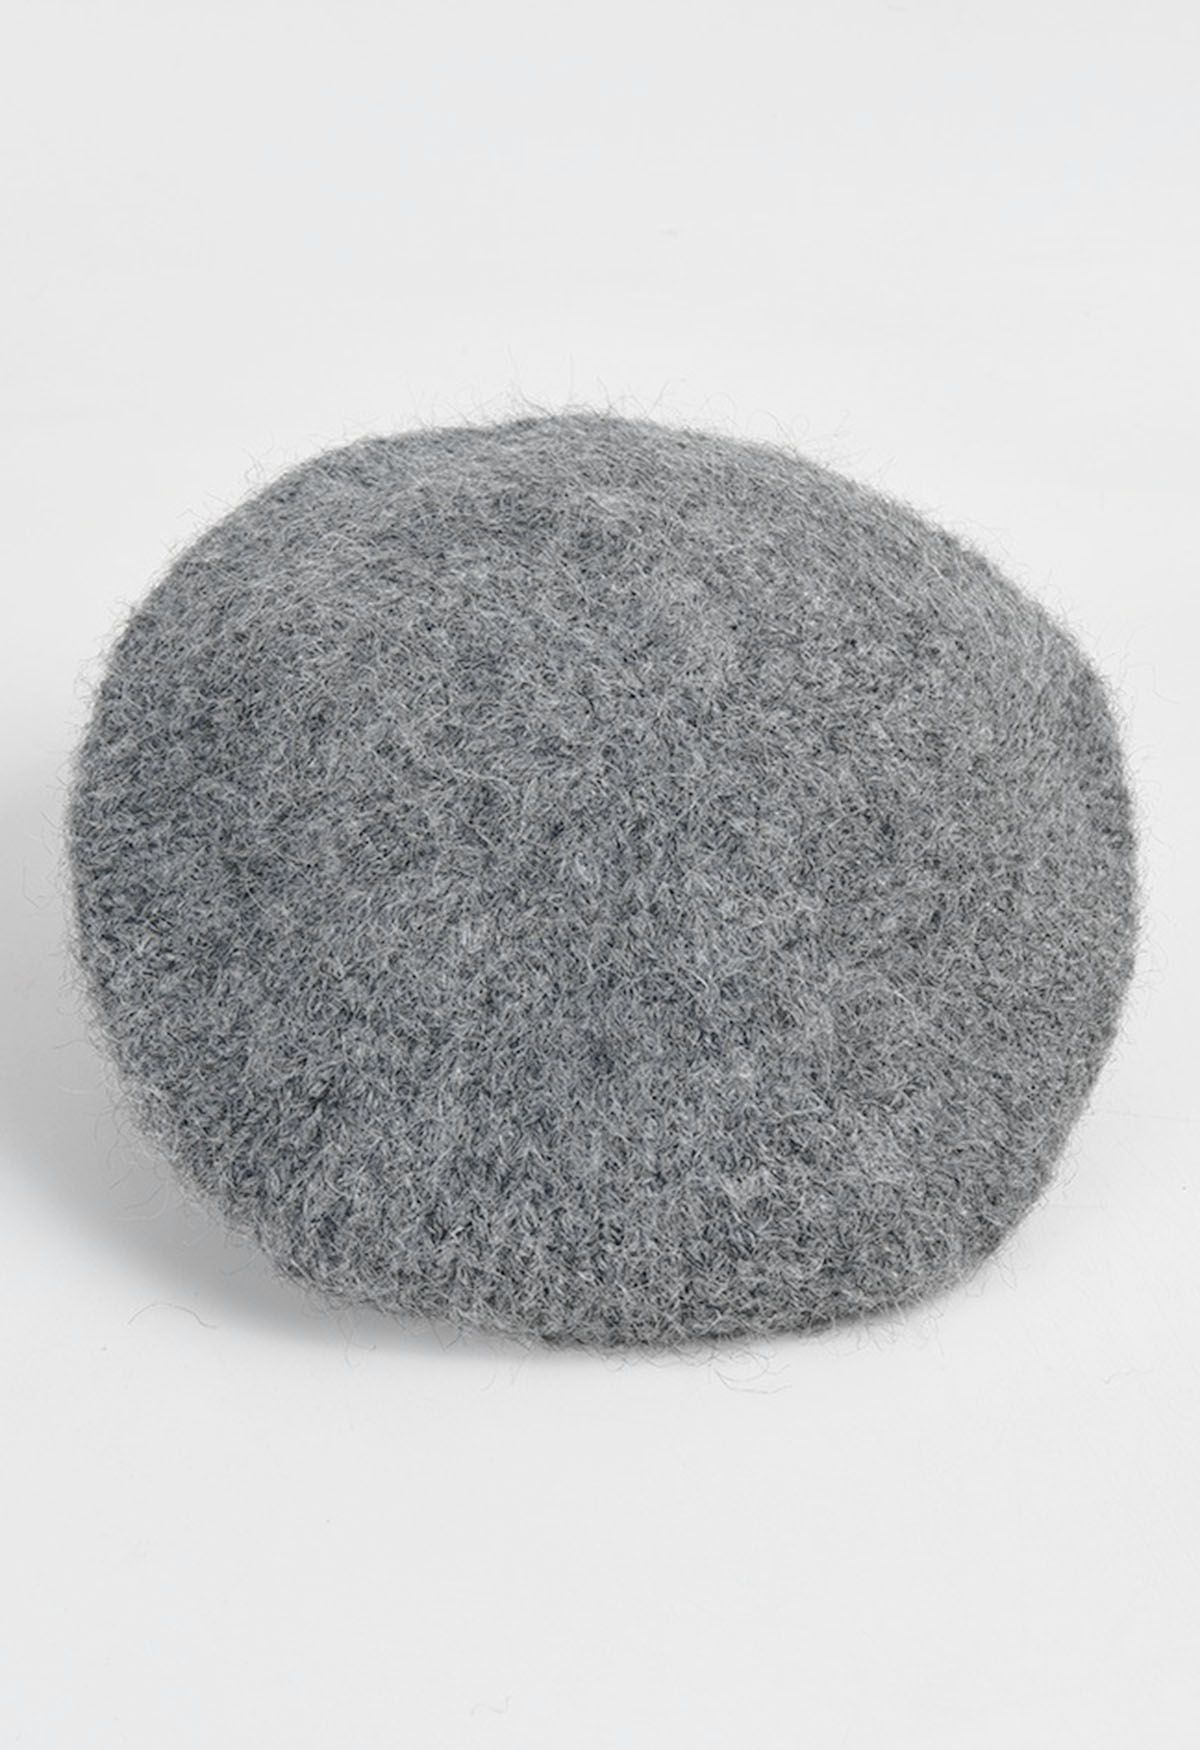 Flauschige Baskenmütze aus Wollmischung in Grau